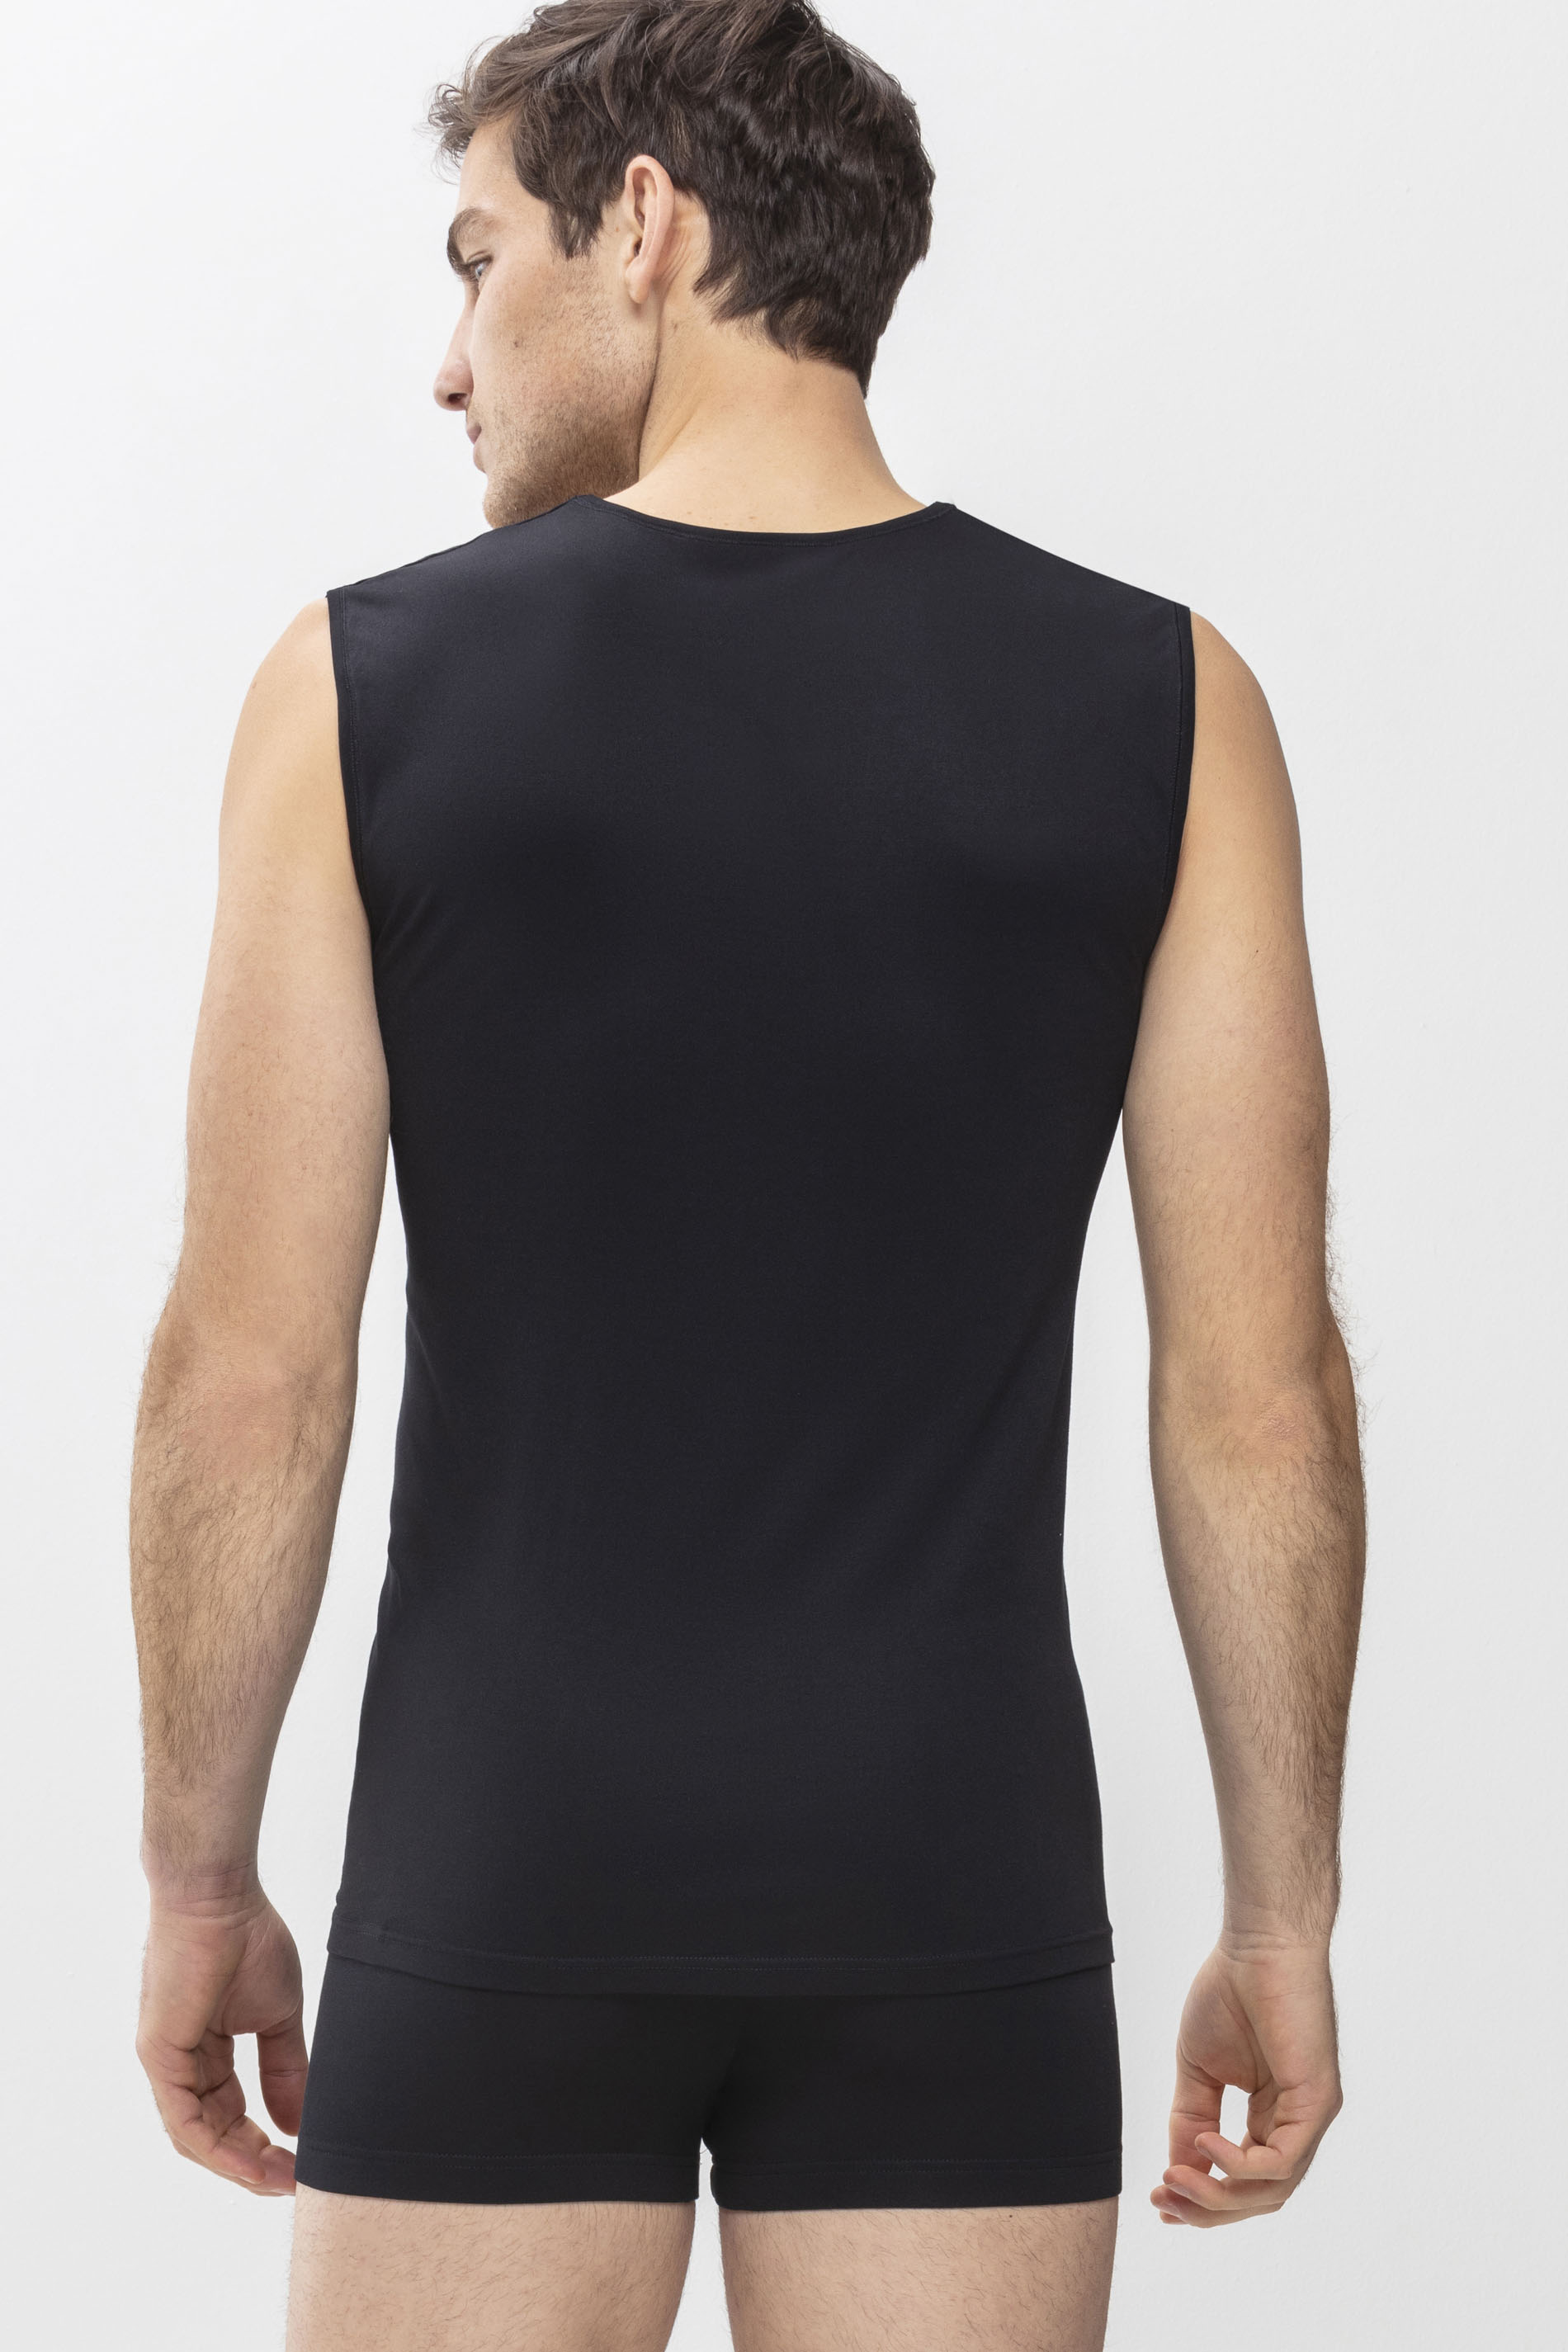 Muskel-Shirt Zwart Serie Software Achteraanzicht | mey®